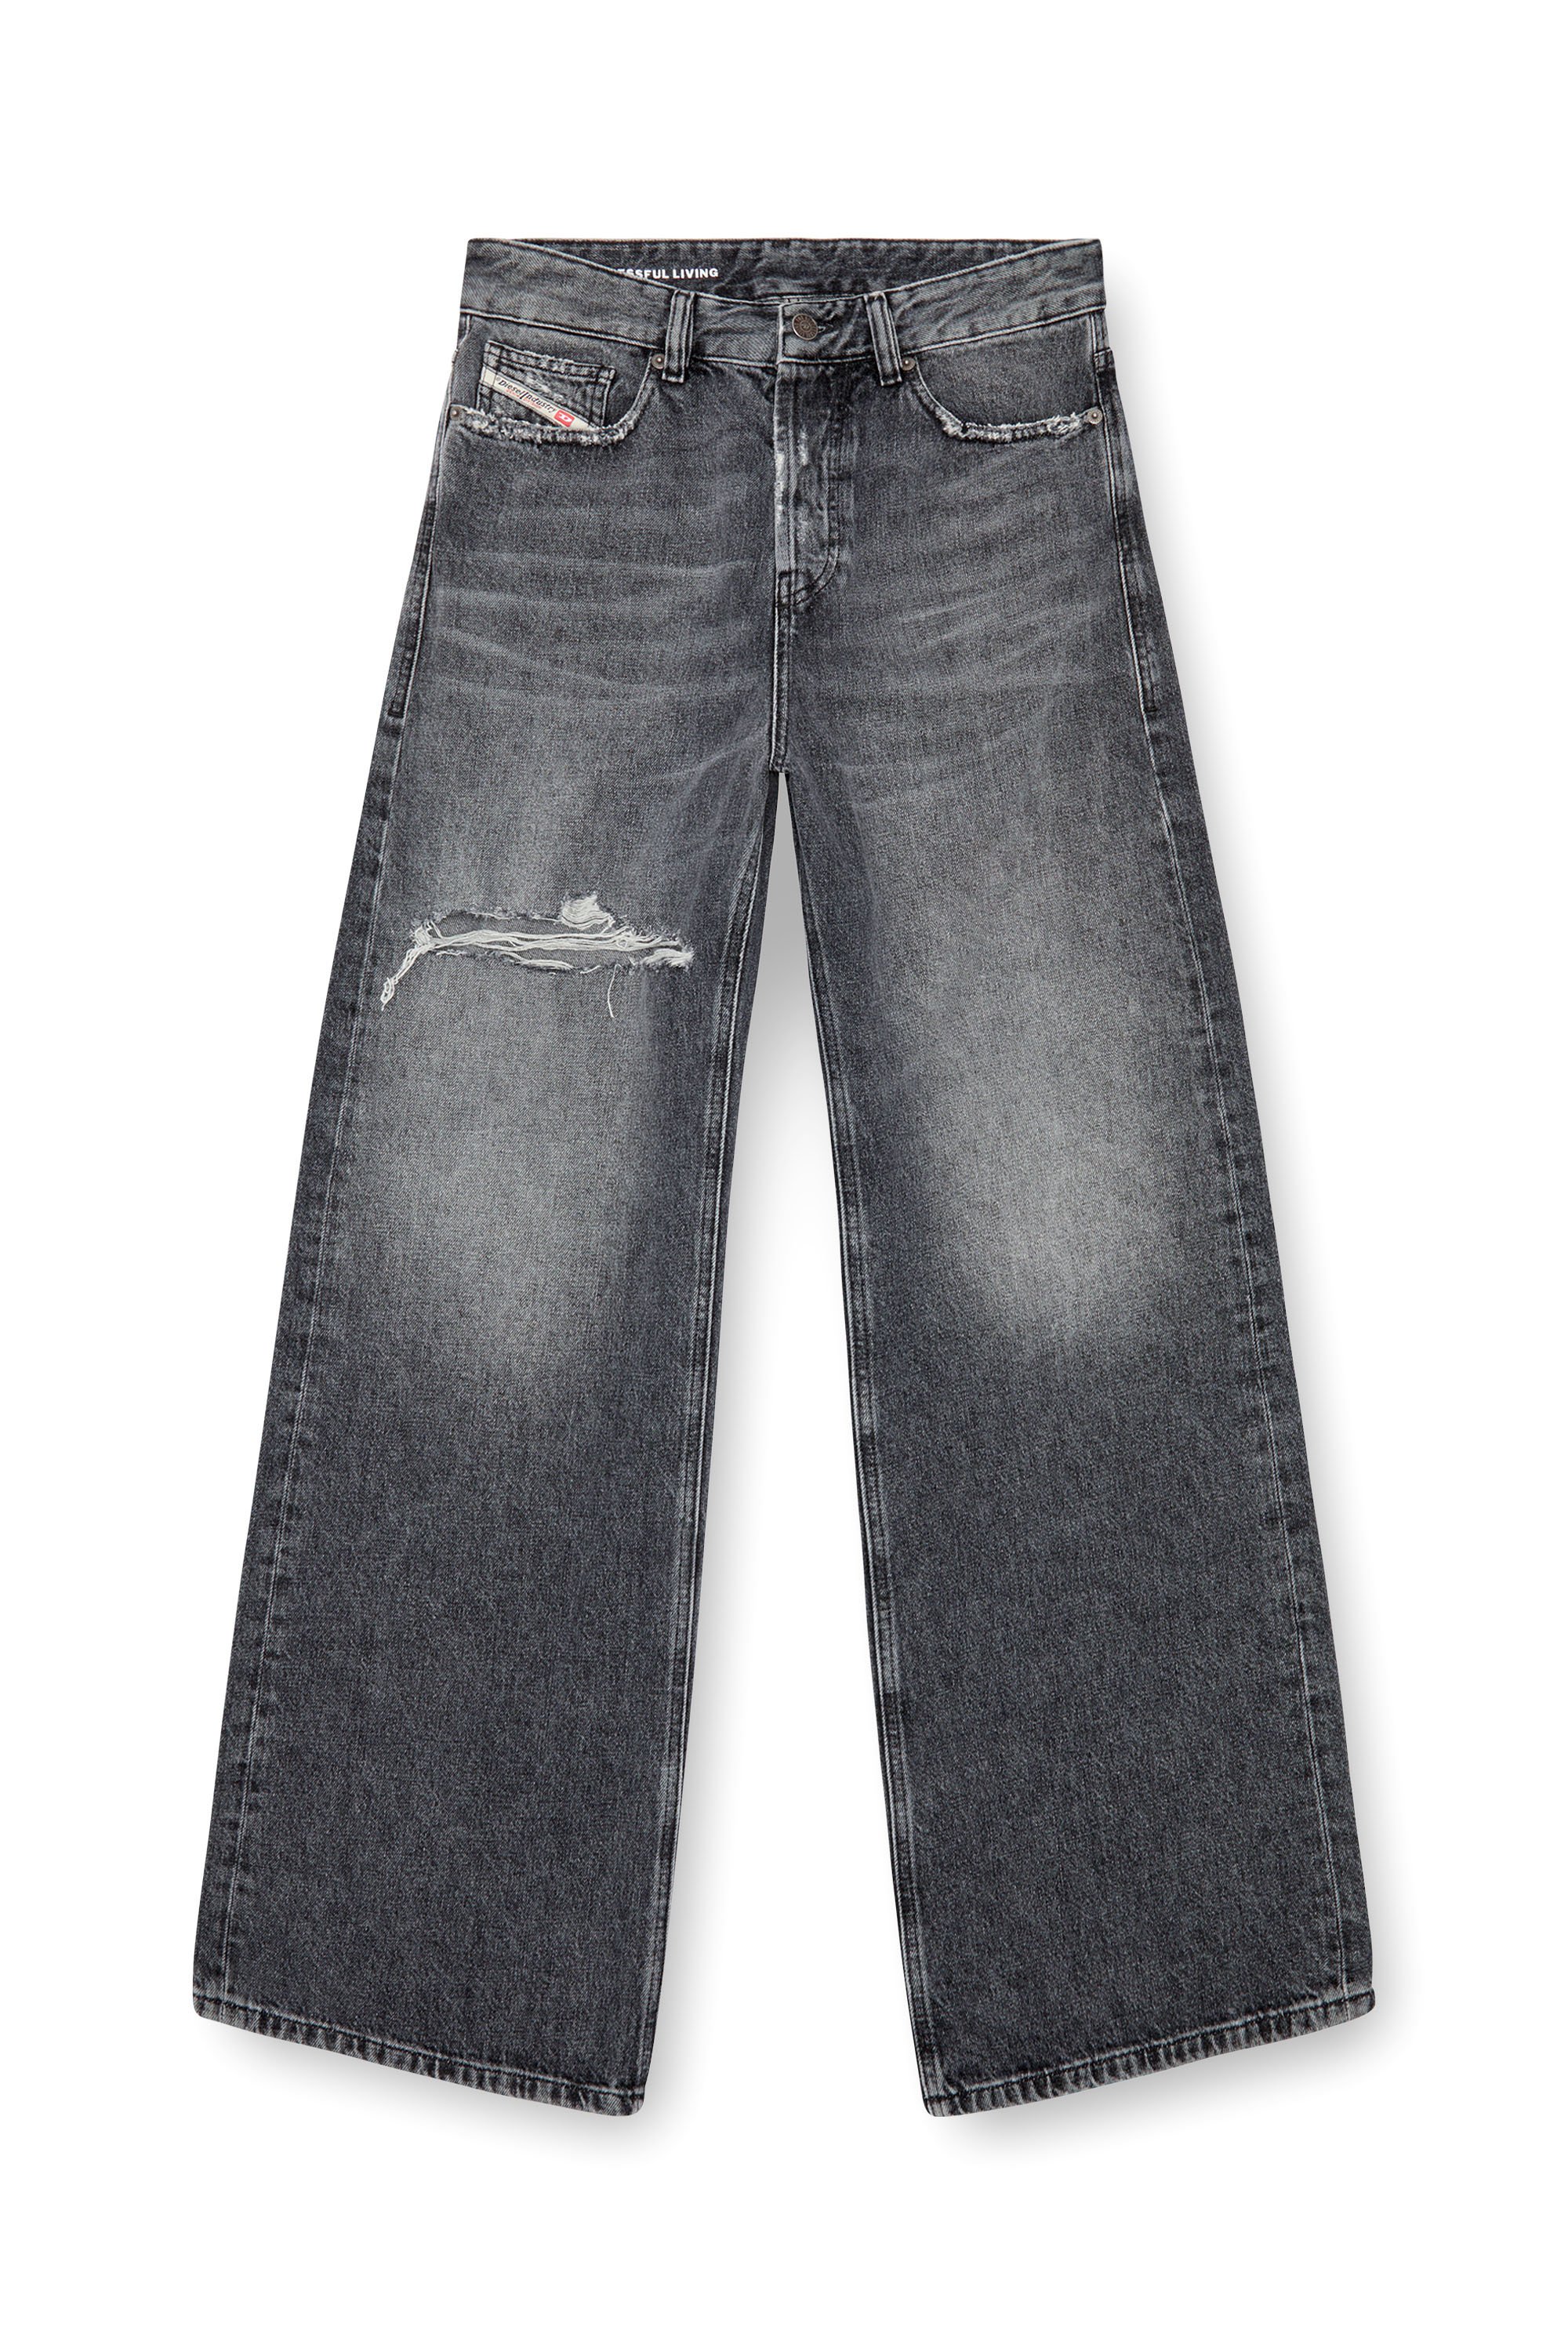 Diesel - Donna Straight Jeans 1996 D-Sire 007X4, Nero/Grigio scuro - Image 6